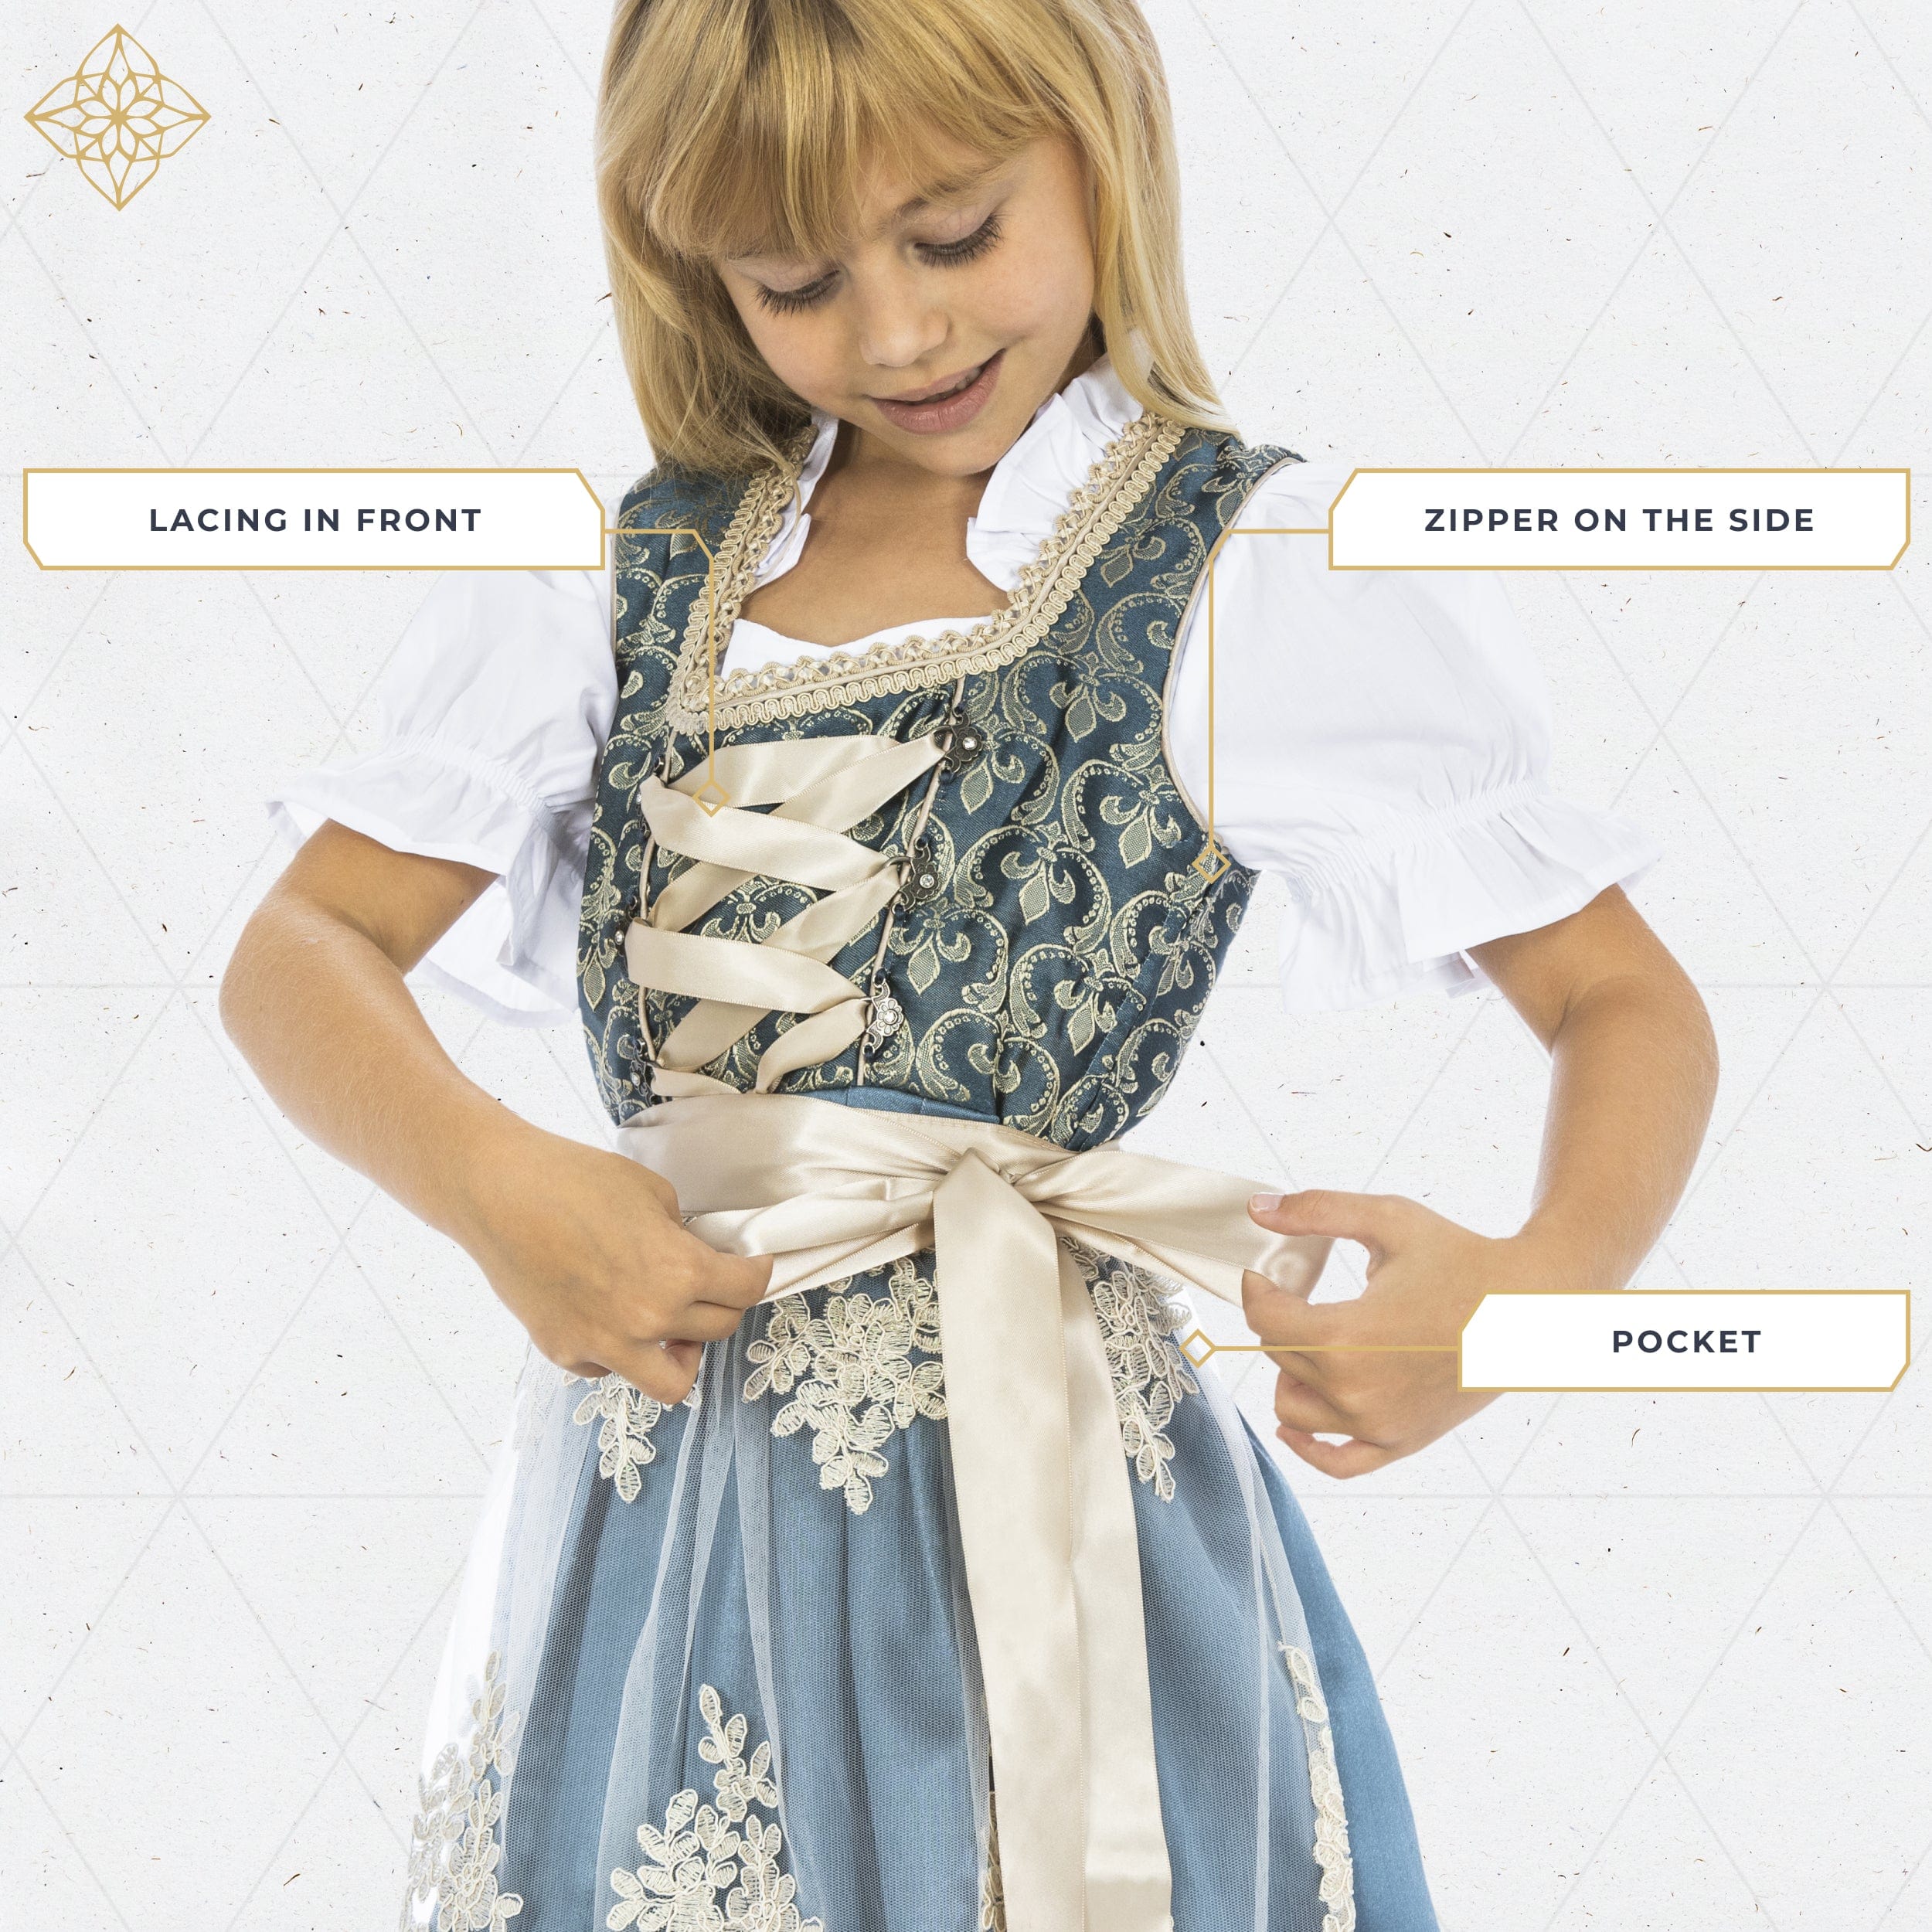 Bavaria Trachten BAVARIA TRACHTEN Dirndl Dress for Kids Blue Gold Oktoberfest 